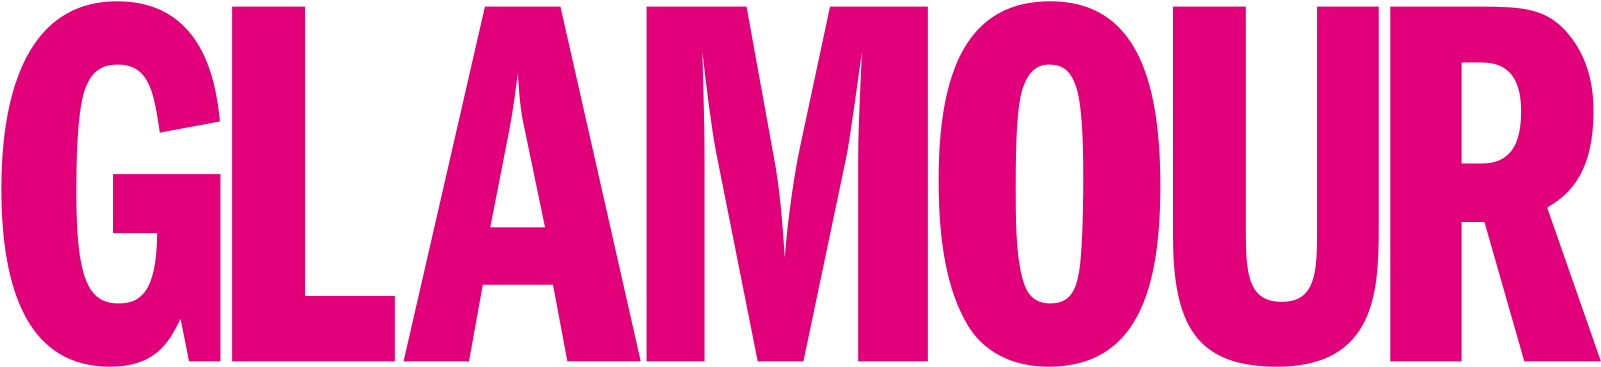 Glamour Logo Png - Free Logo Image